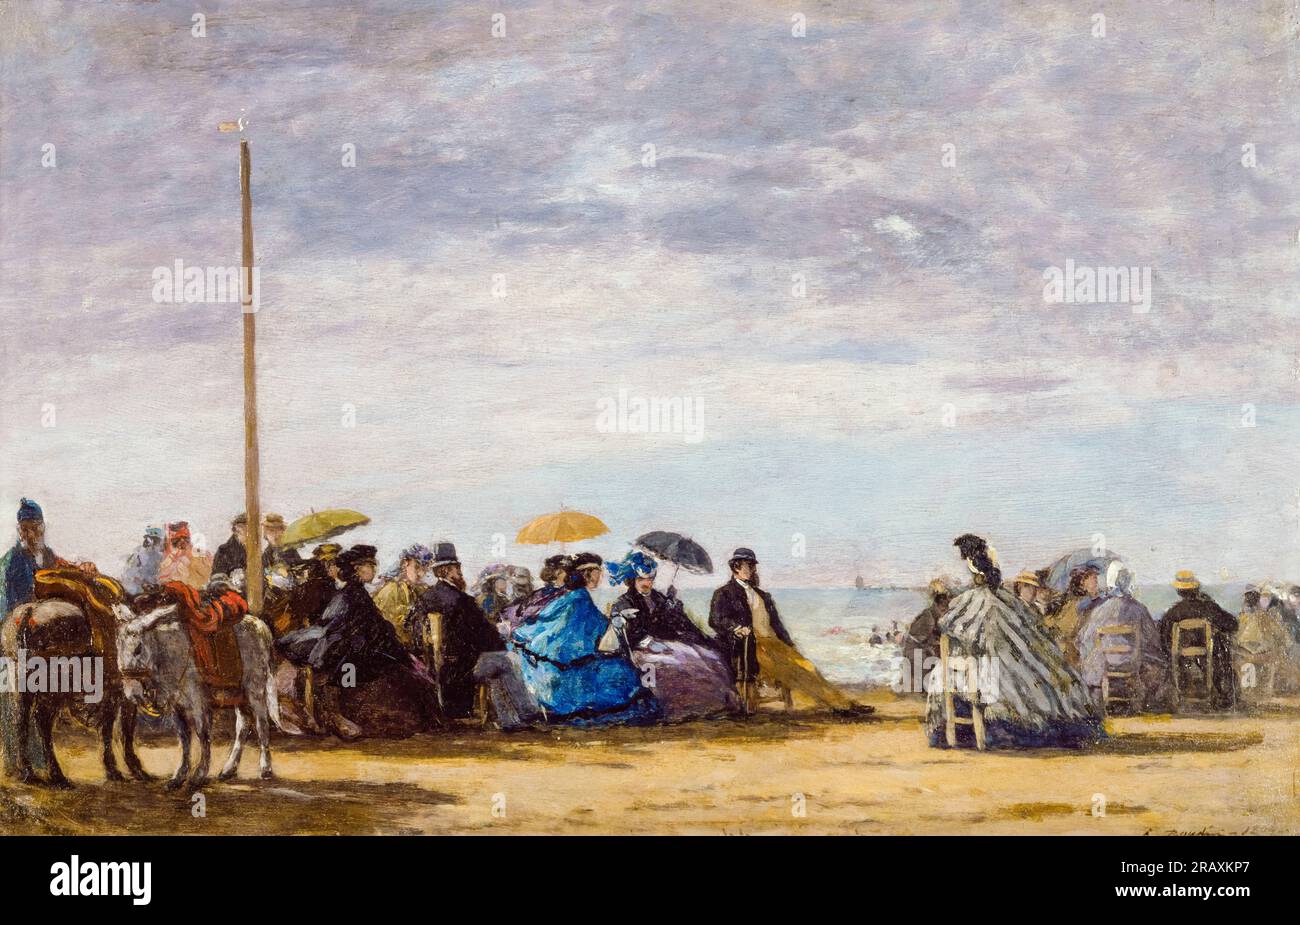 Eugène Boudin, la plage, peinture à l'huile sur panneau, 1864 Banque D'Images